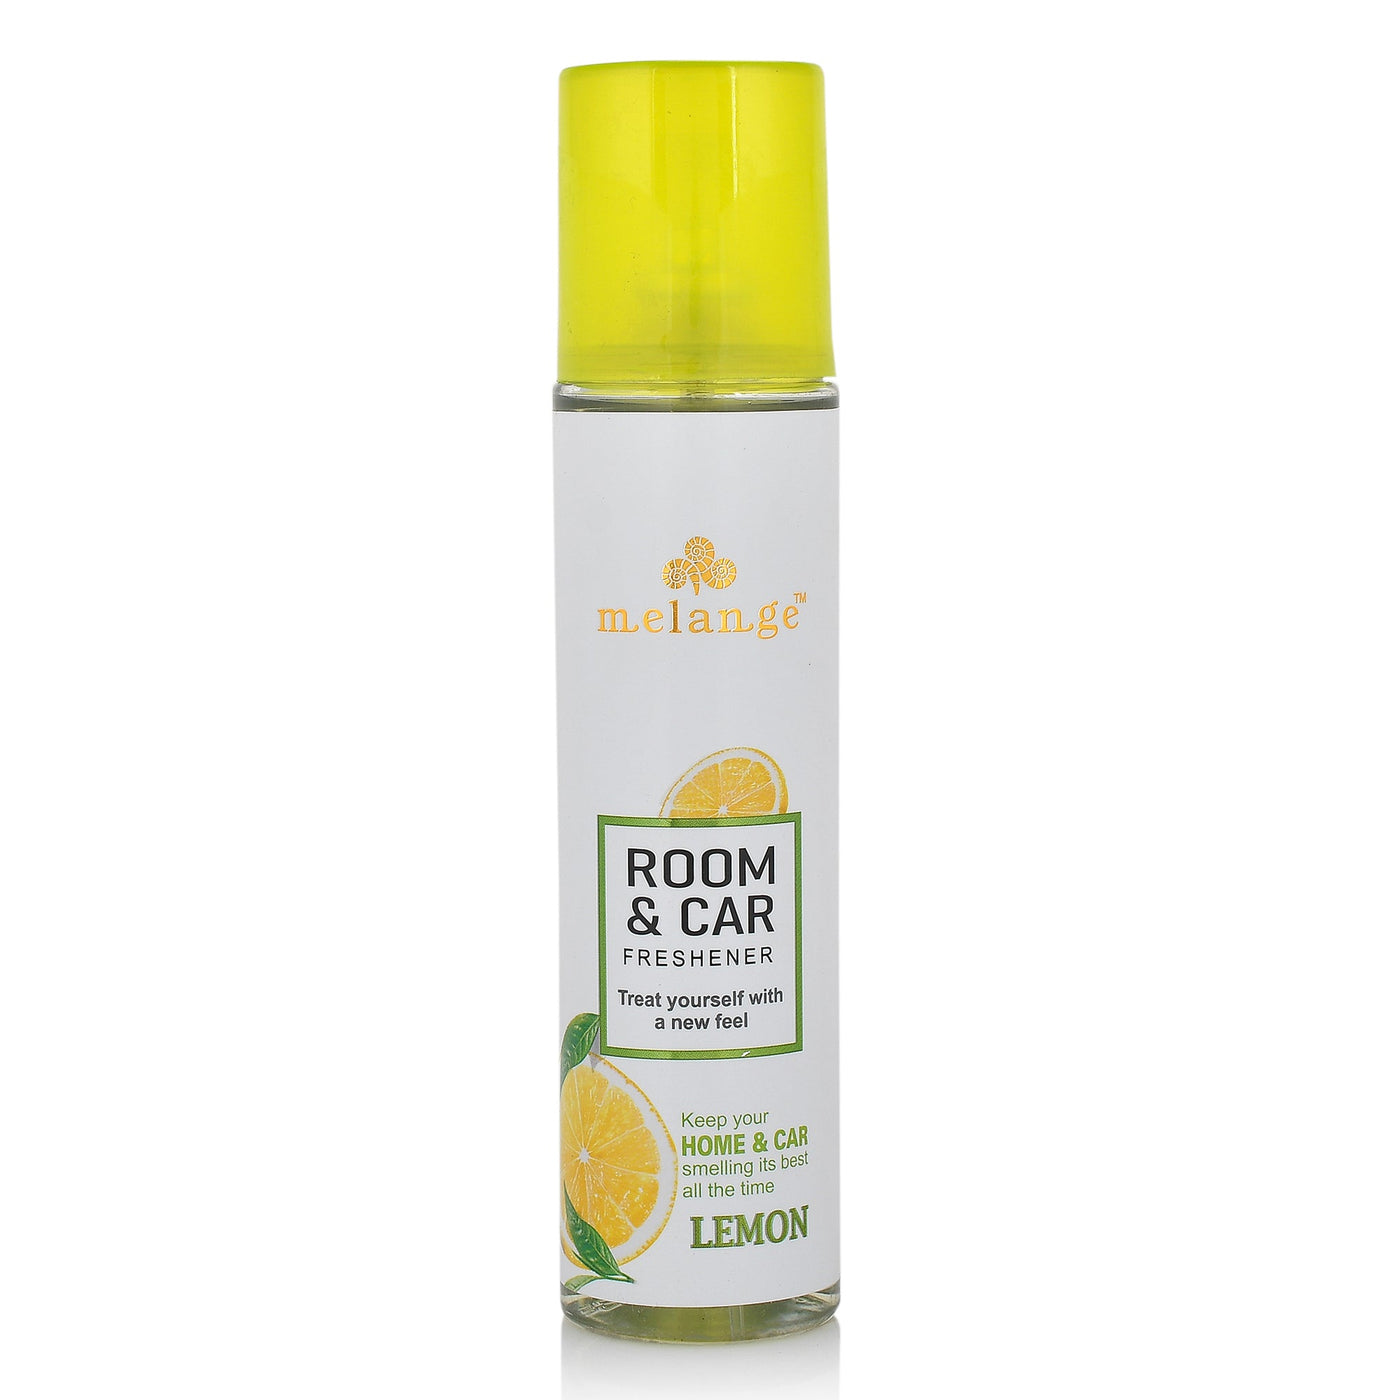 Melange Lemon Room and Car Freshener